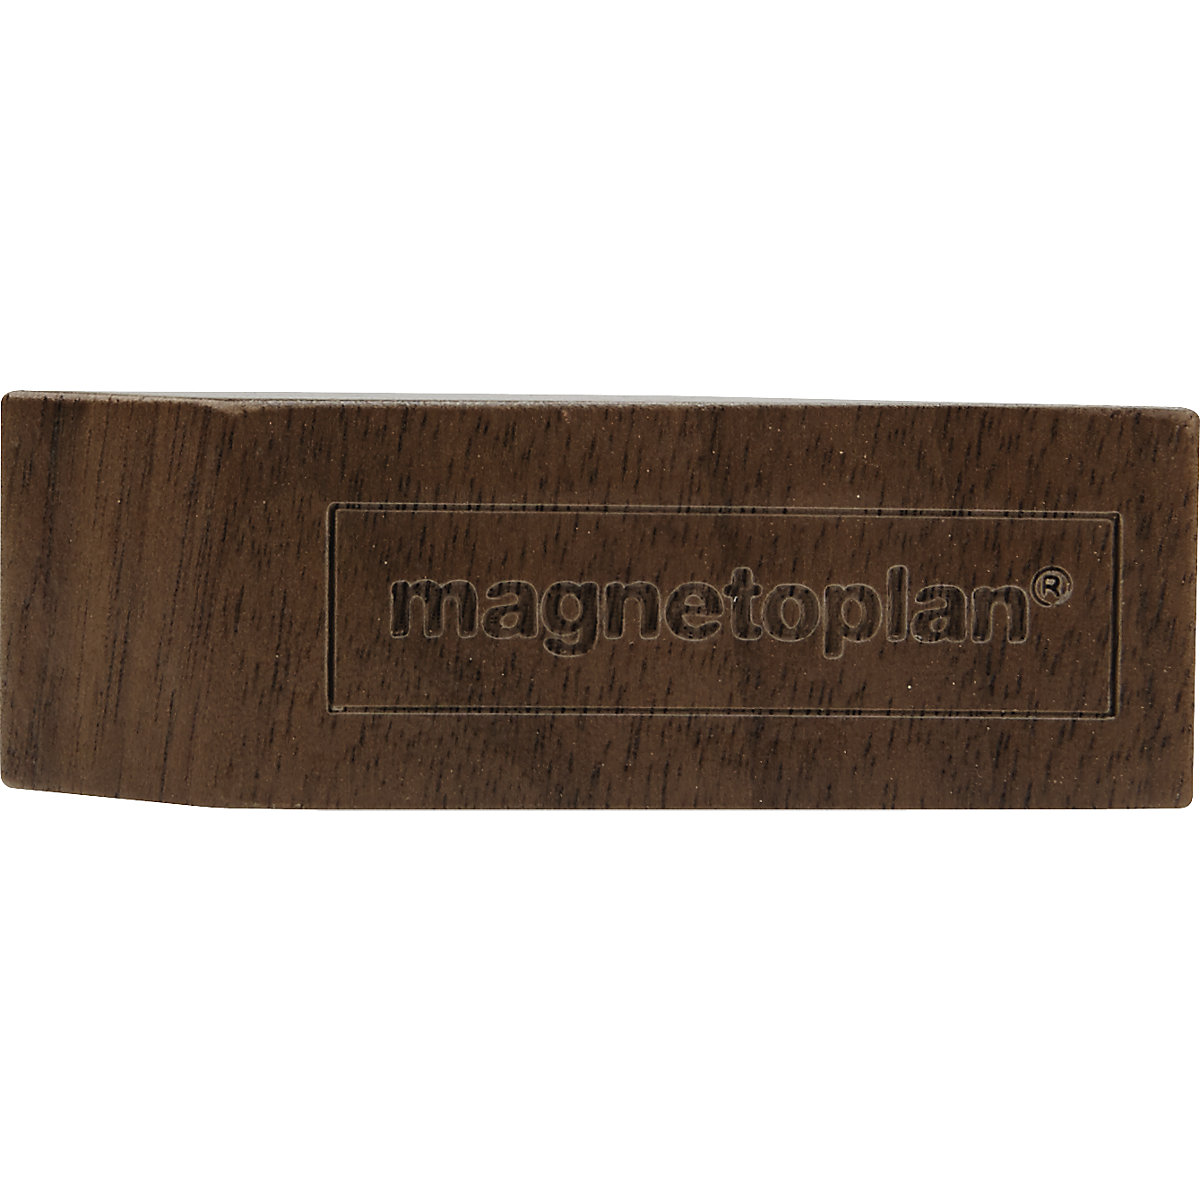 Magnet de design din lemn, amb. 4 buc. (Imagine produs 9)-8